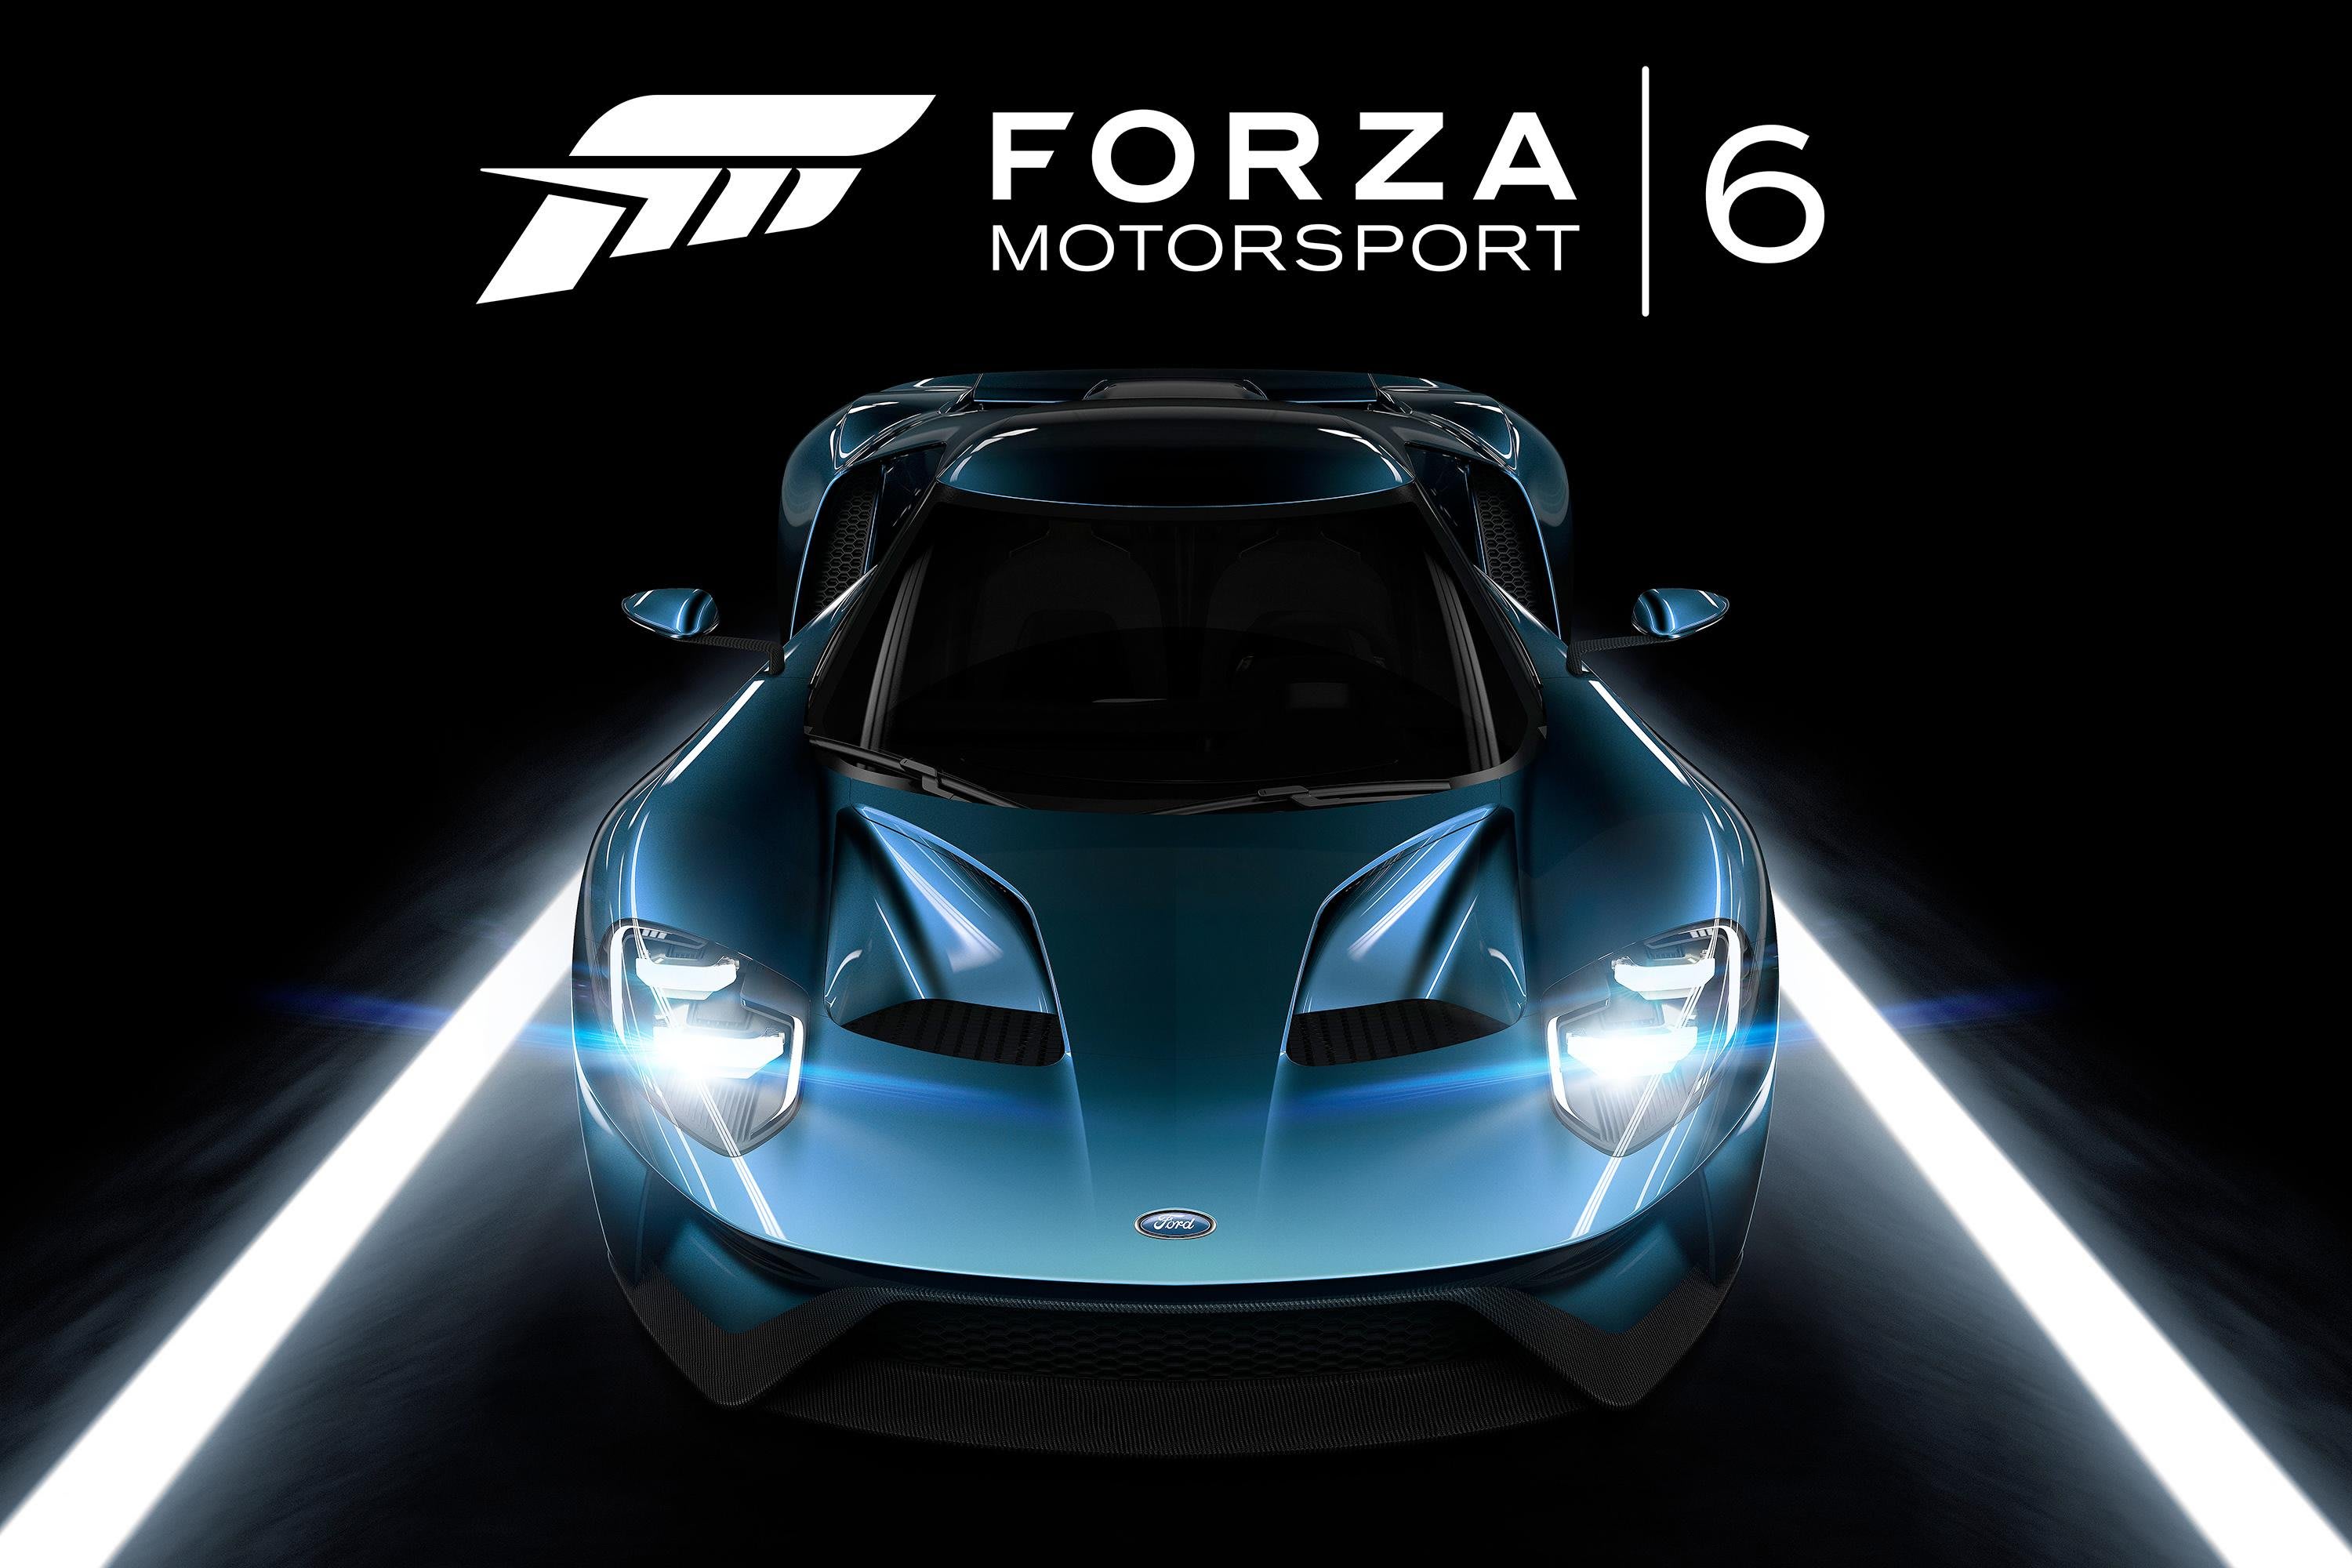 Forza Horizon 3 - Open World Free Roam Gameplay (HD) [1080p60FPS